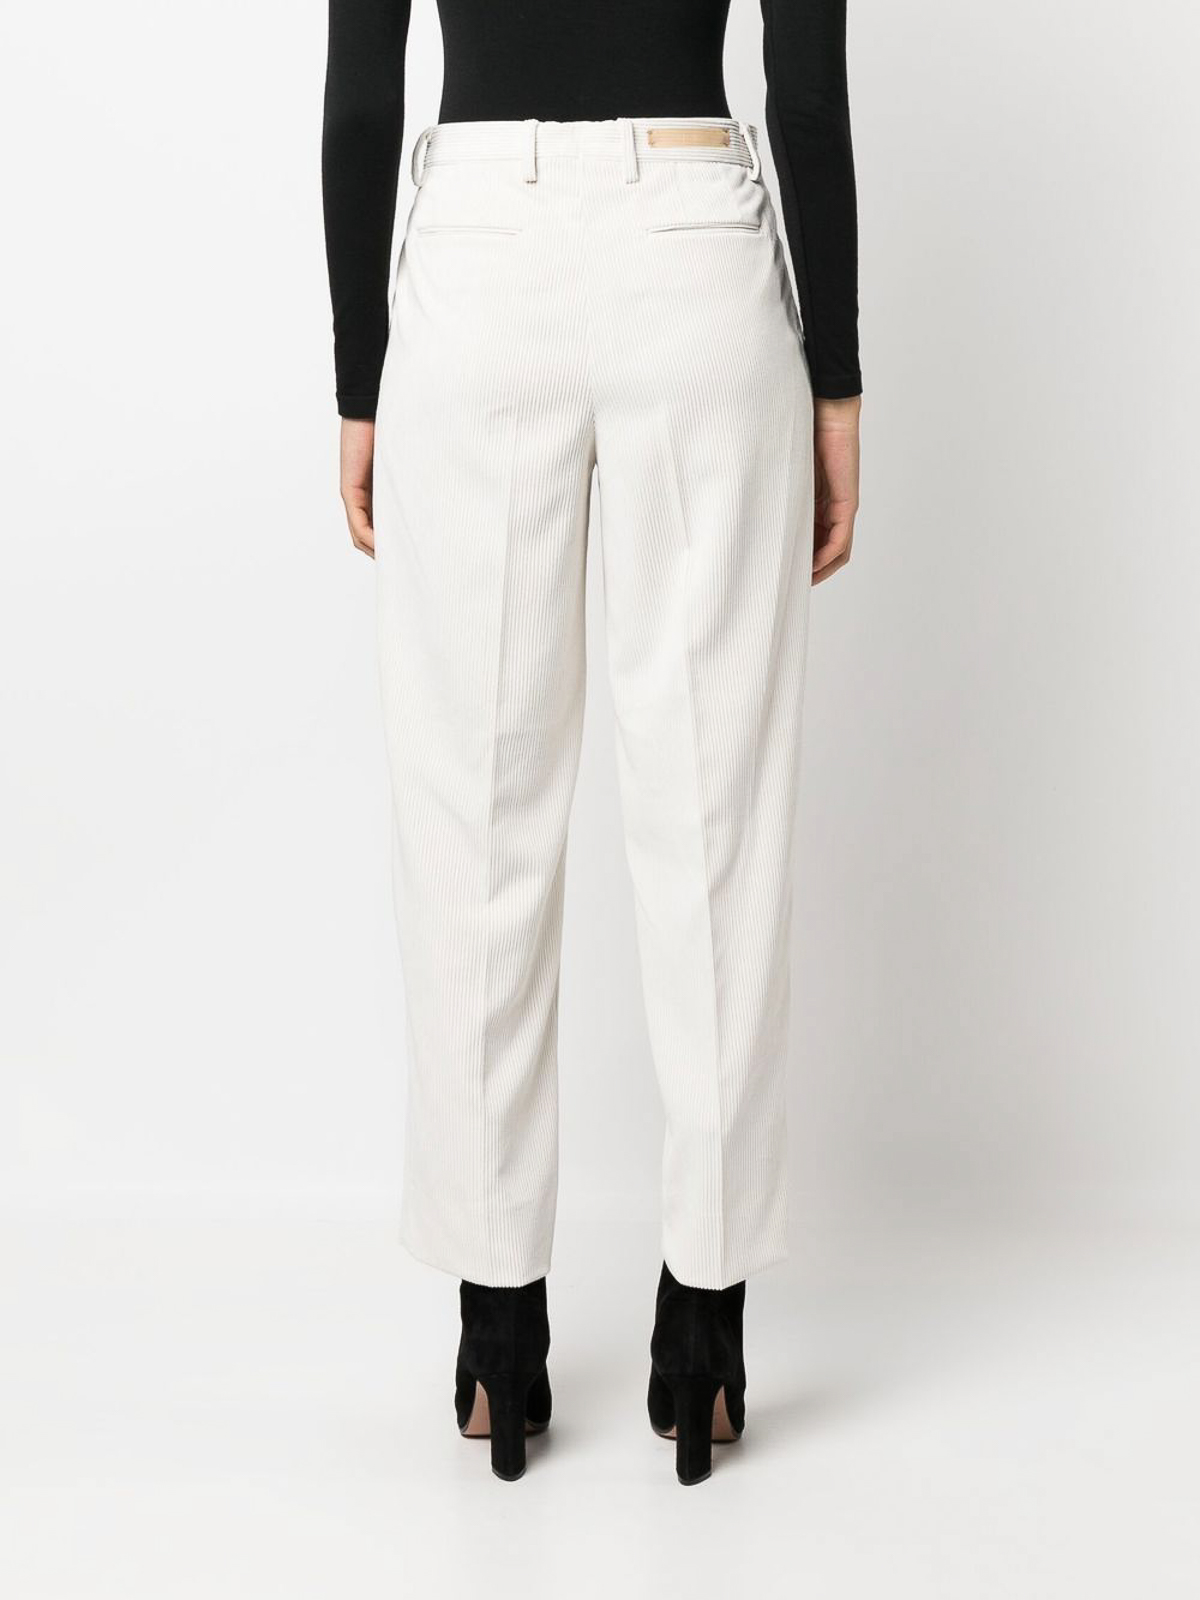 Buy W Women Blue Slim Fit Self Design Trousers online  Looksgudin